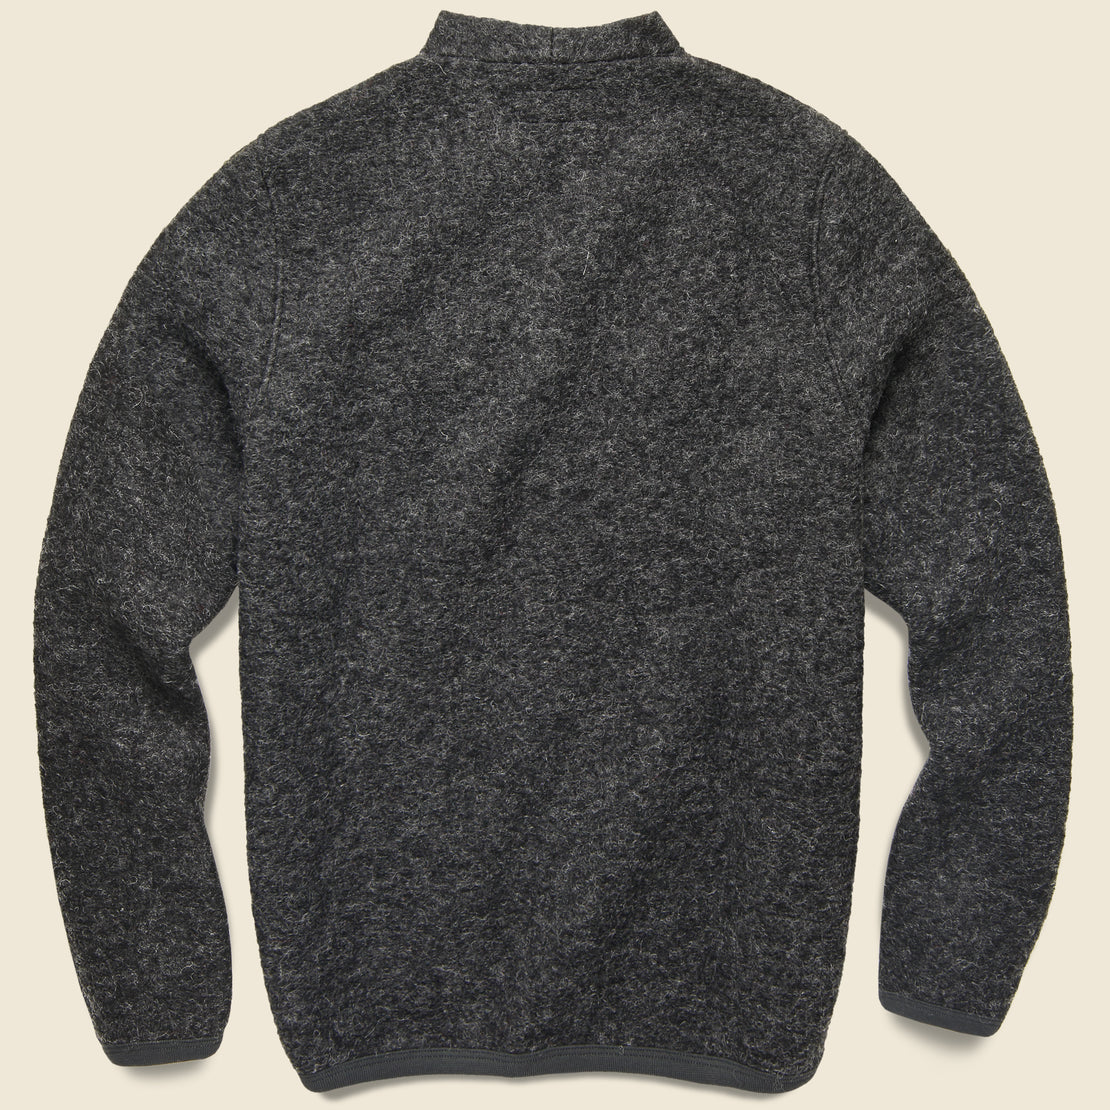 Wool Fleece Cardigan - Charcoal